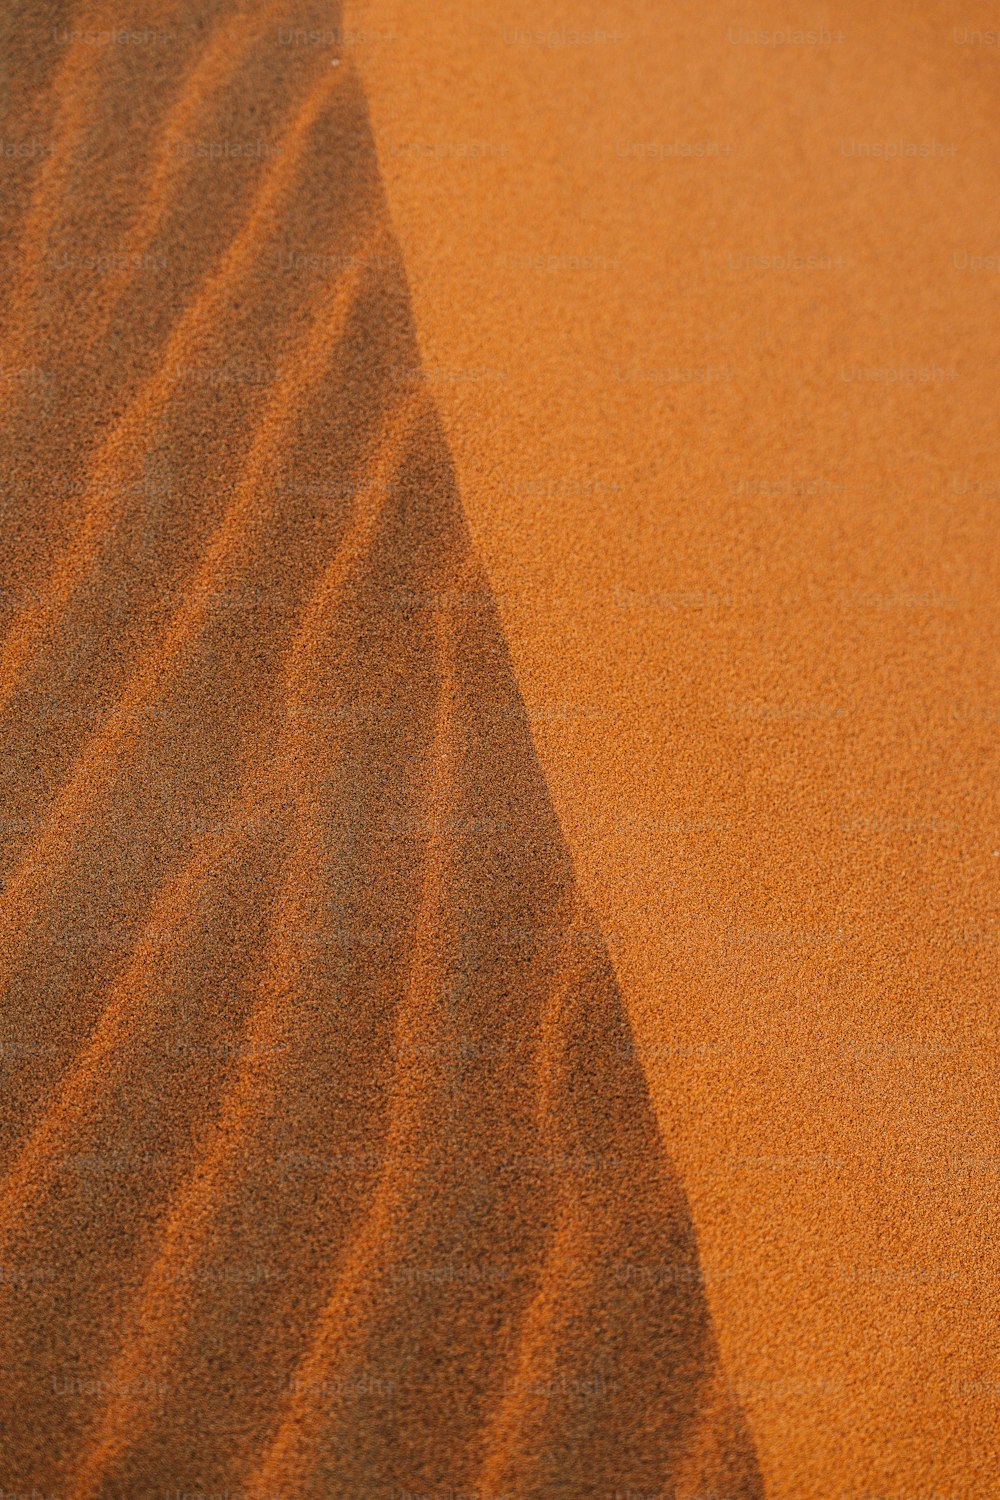 멀리 모래 언덕이 있는 사막 장면